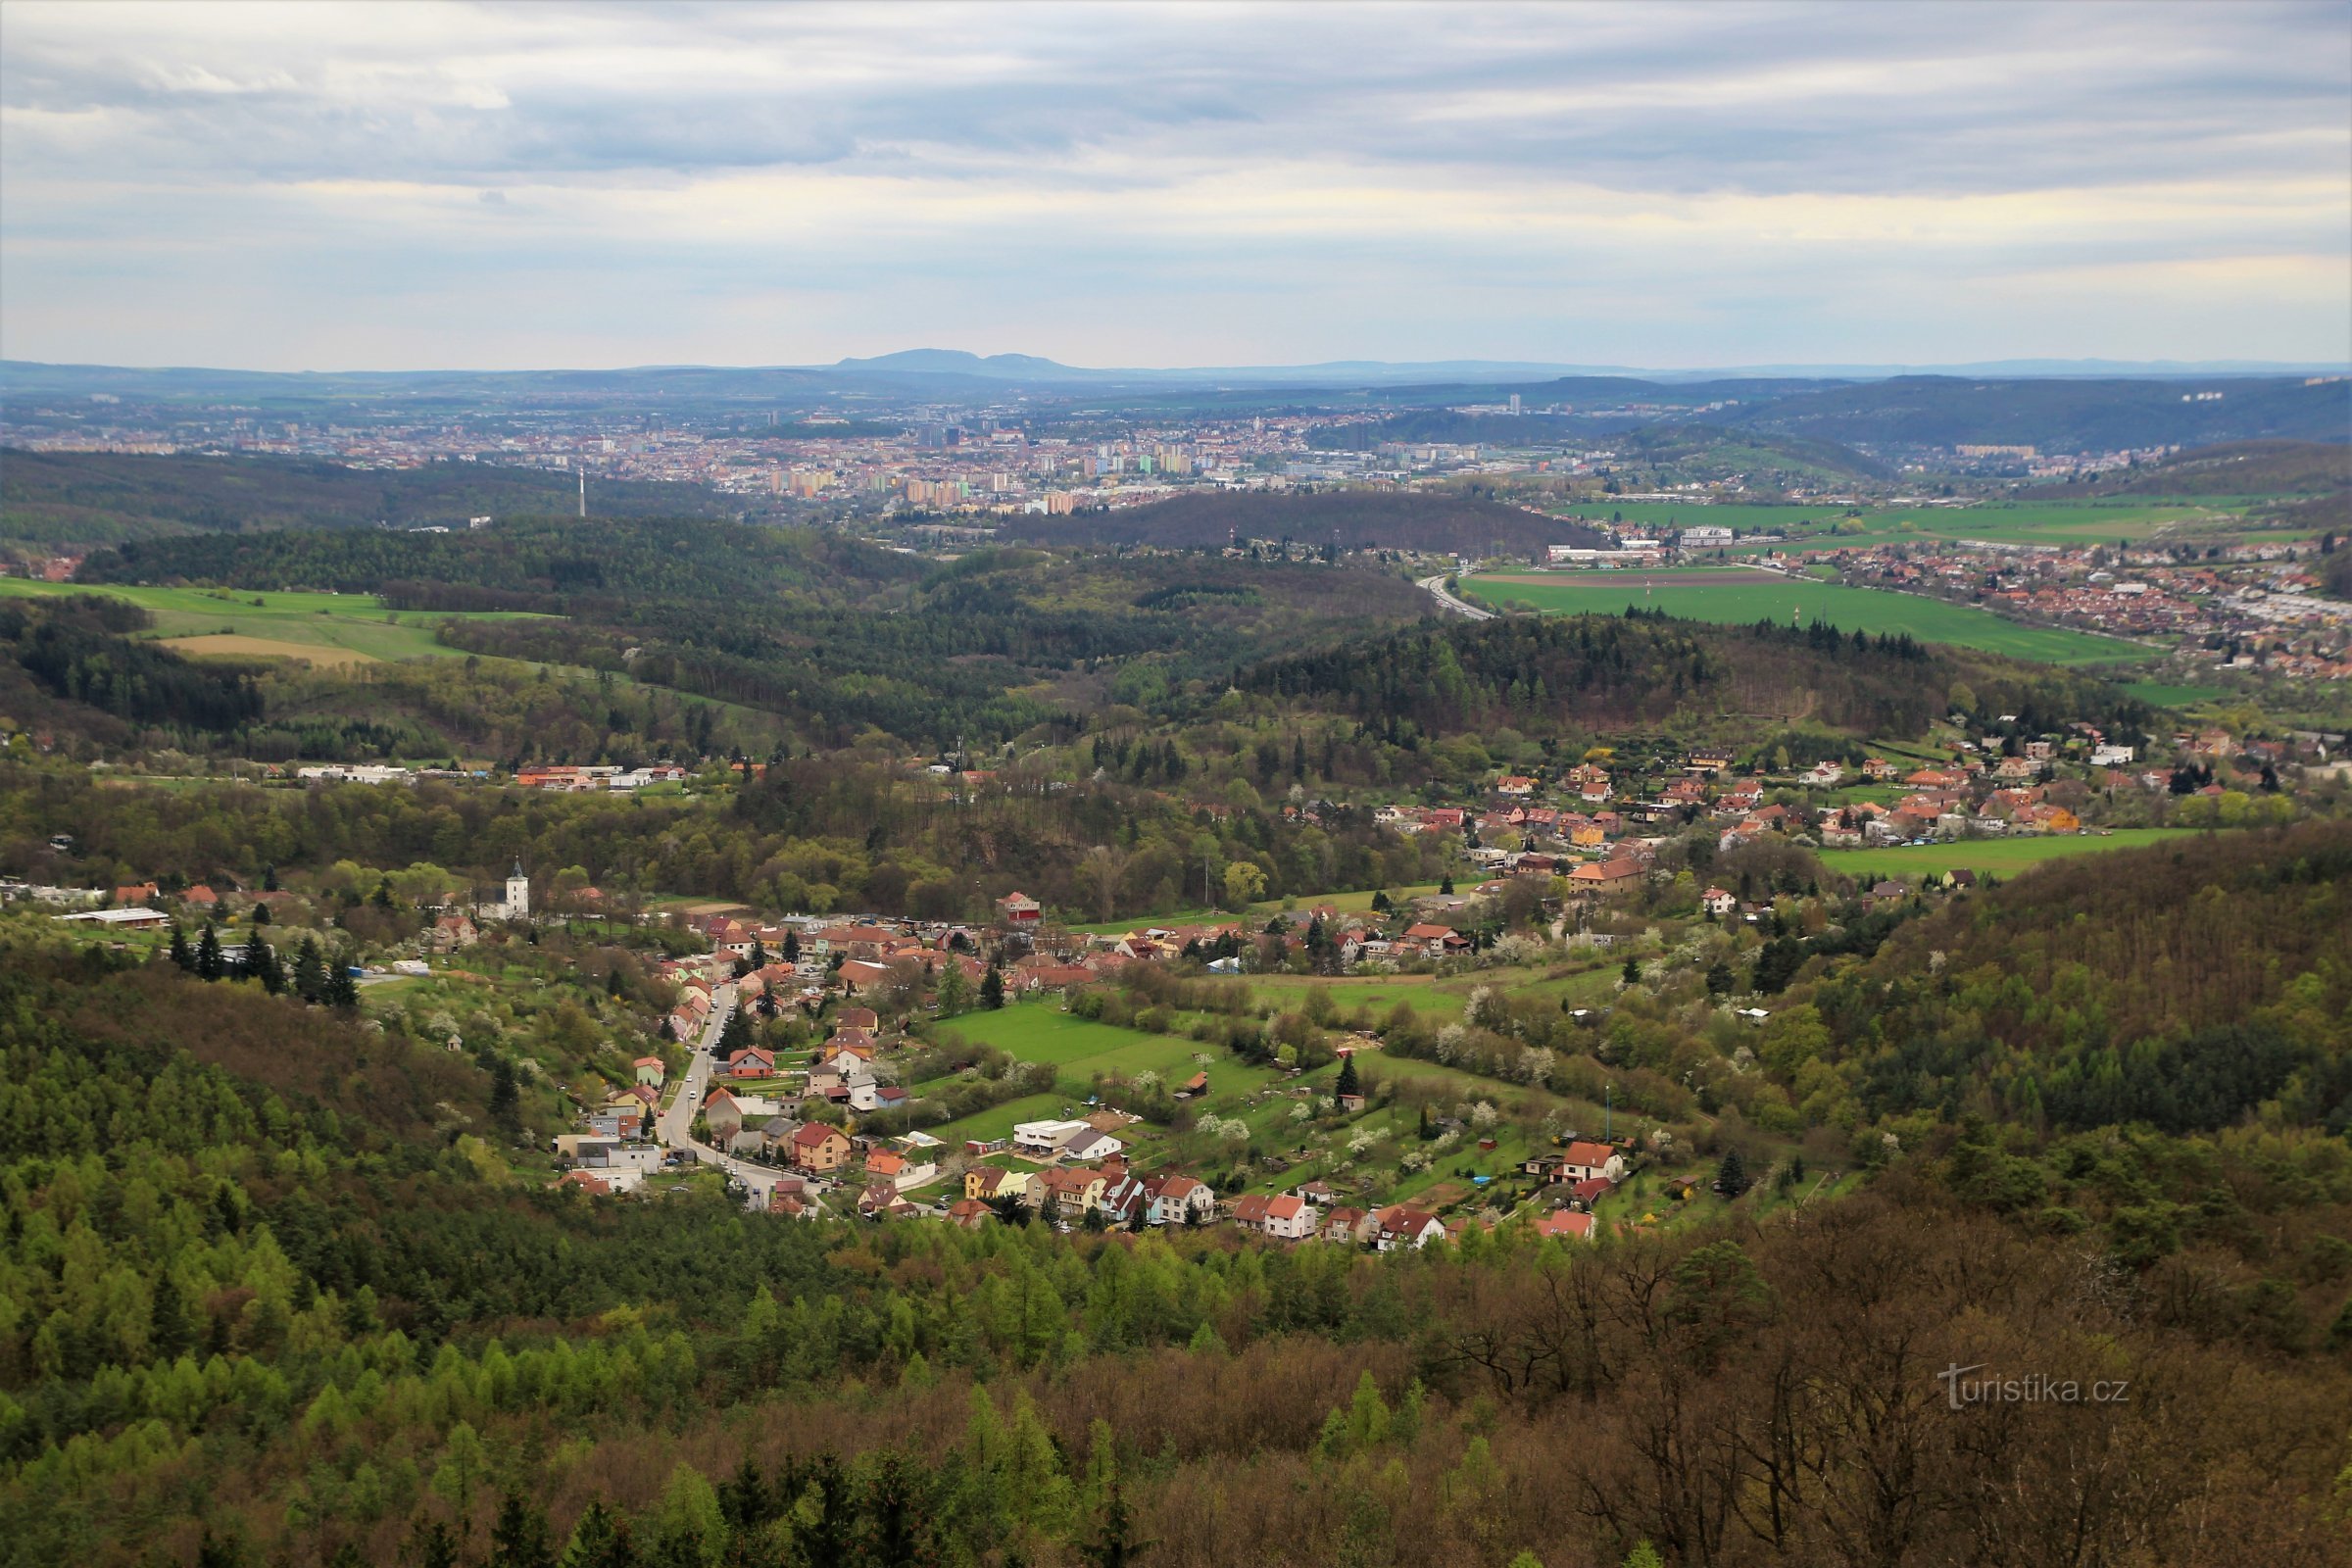 Widok na Brno, na pierwszym planie Lelekovice, w tle grzbiet Pálavy na horyzoncie